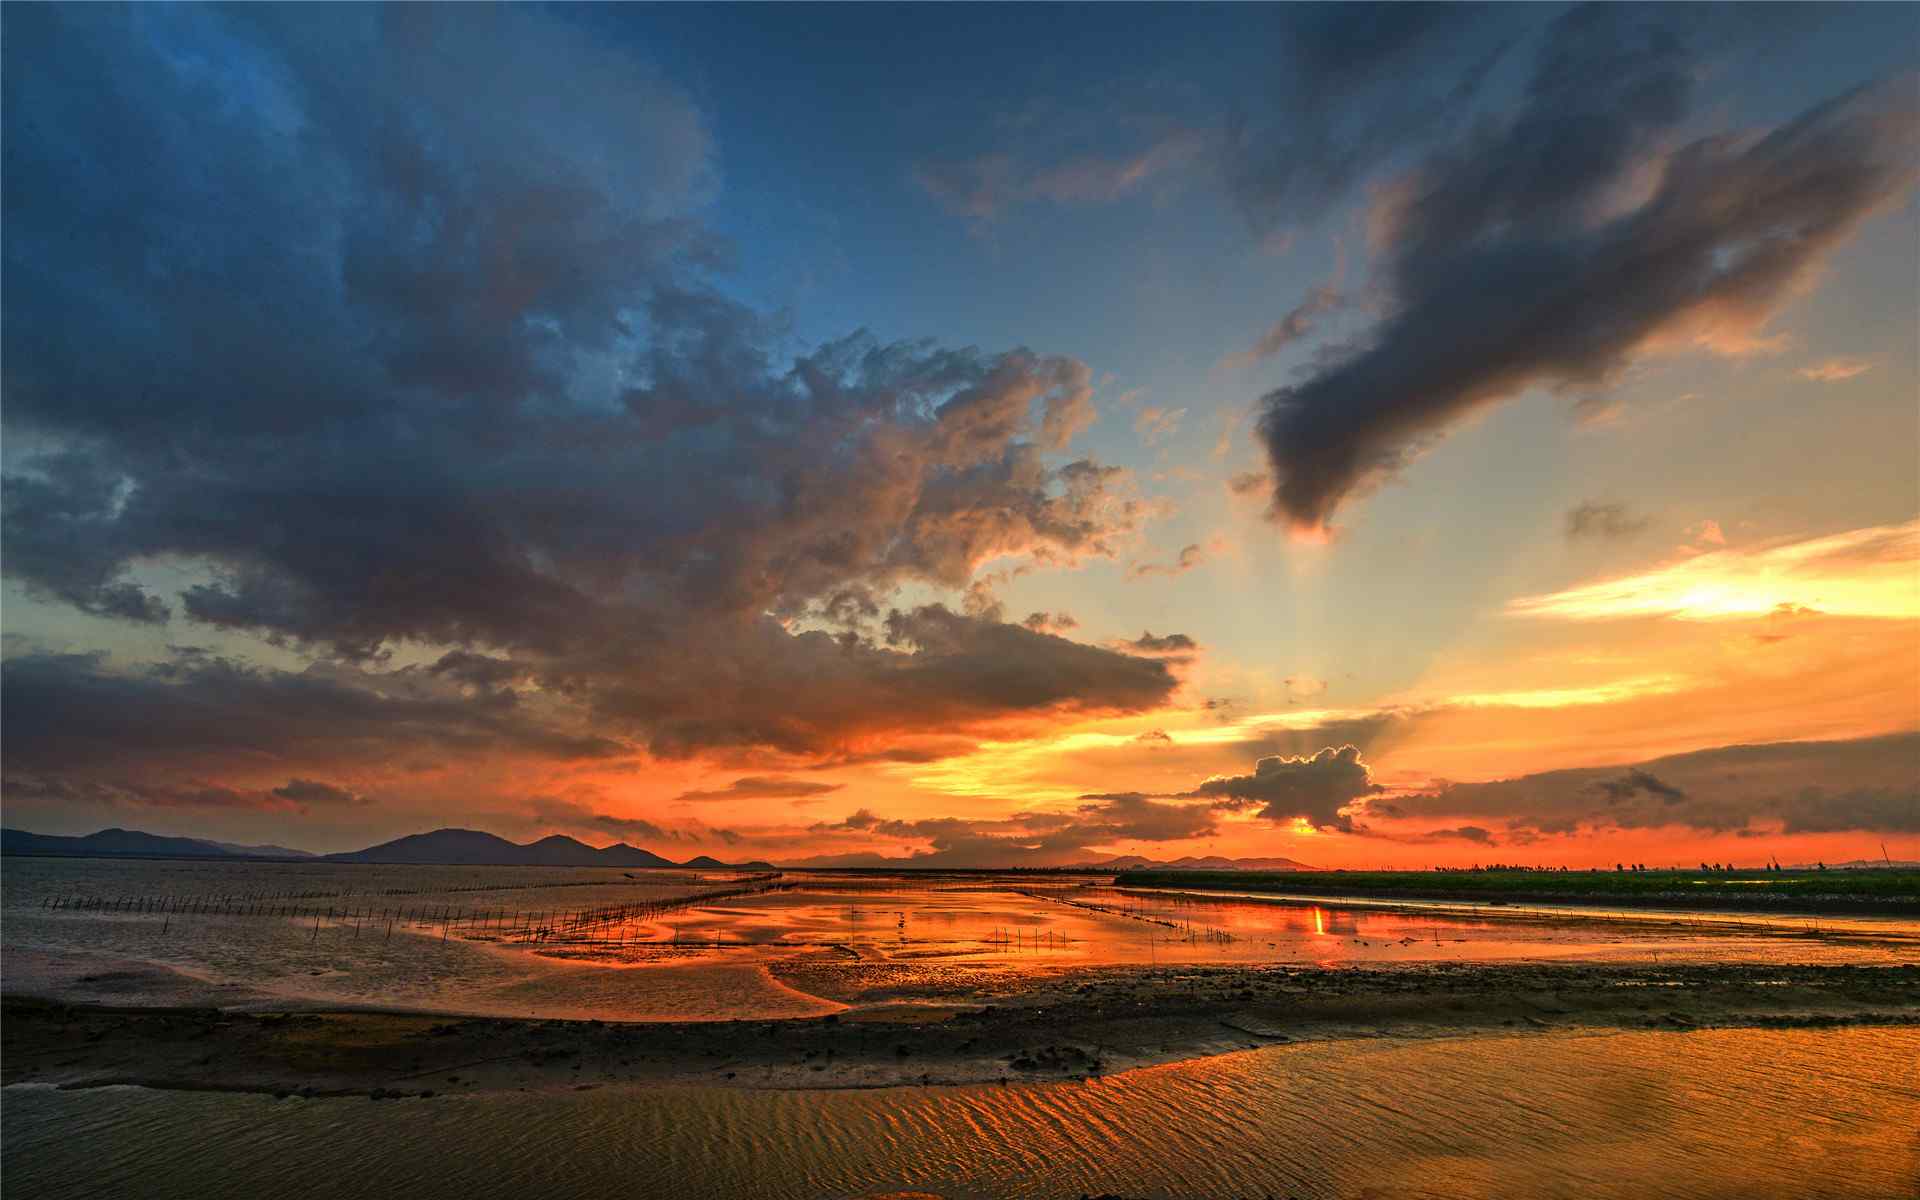 唯美的海陵岛夕阳风景图片